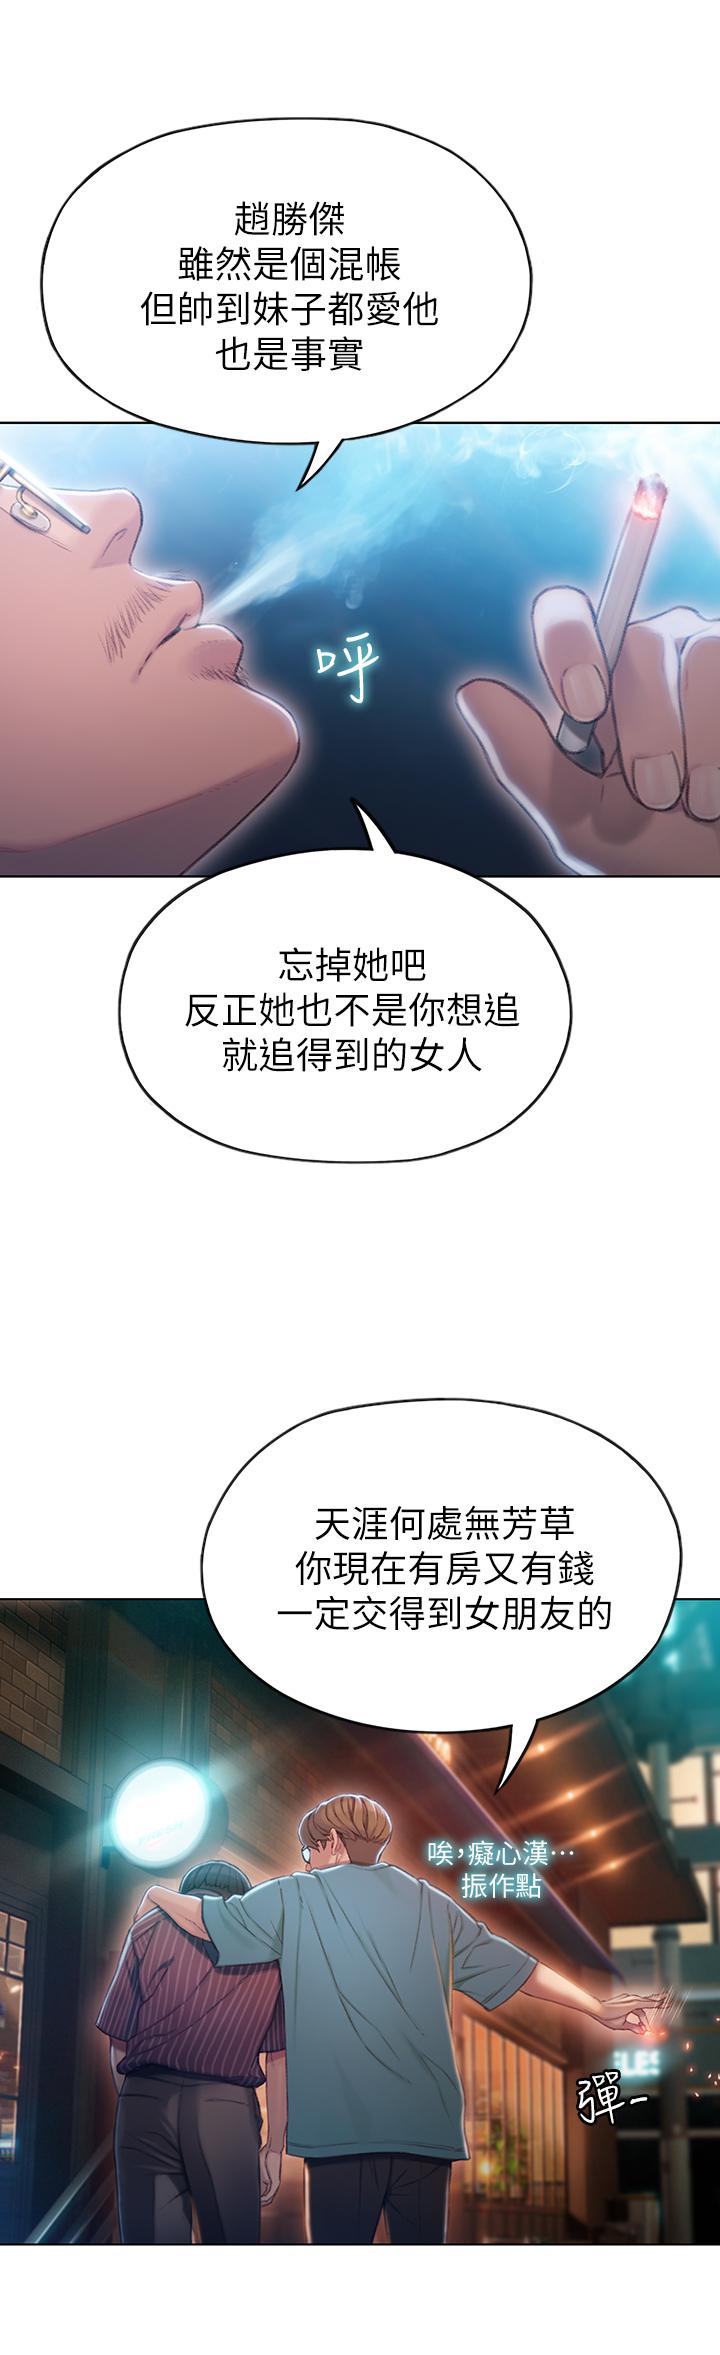 韩国污漫画 戀愛大富翁 第3话-特有的标识领地记号 21